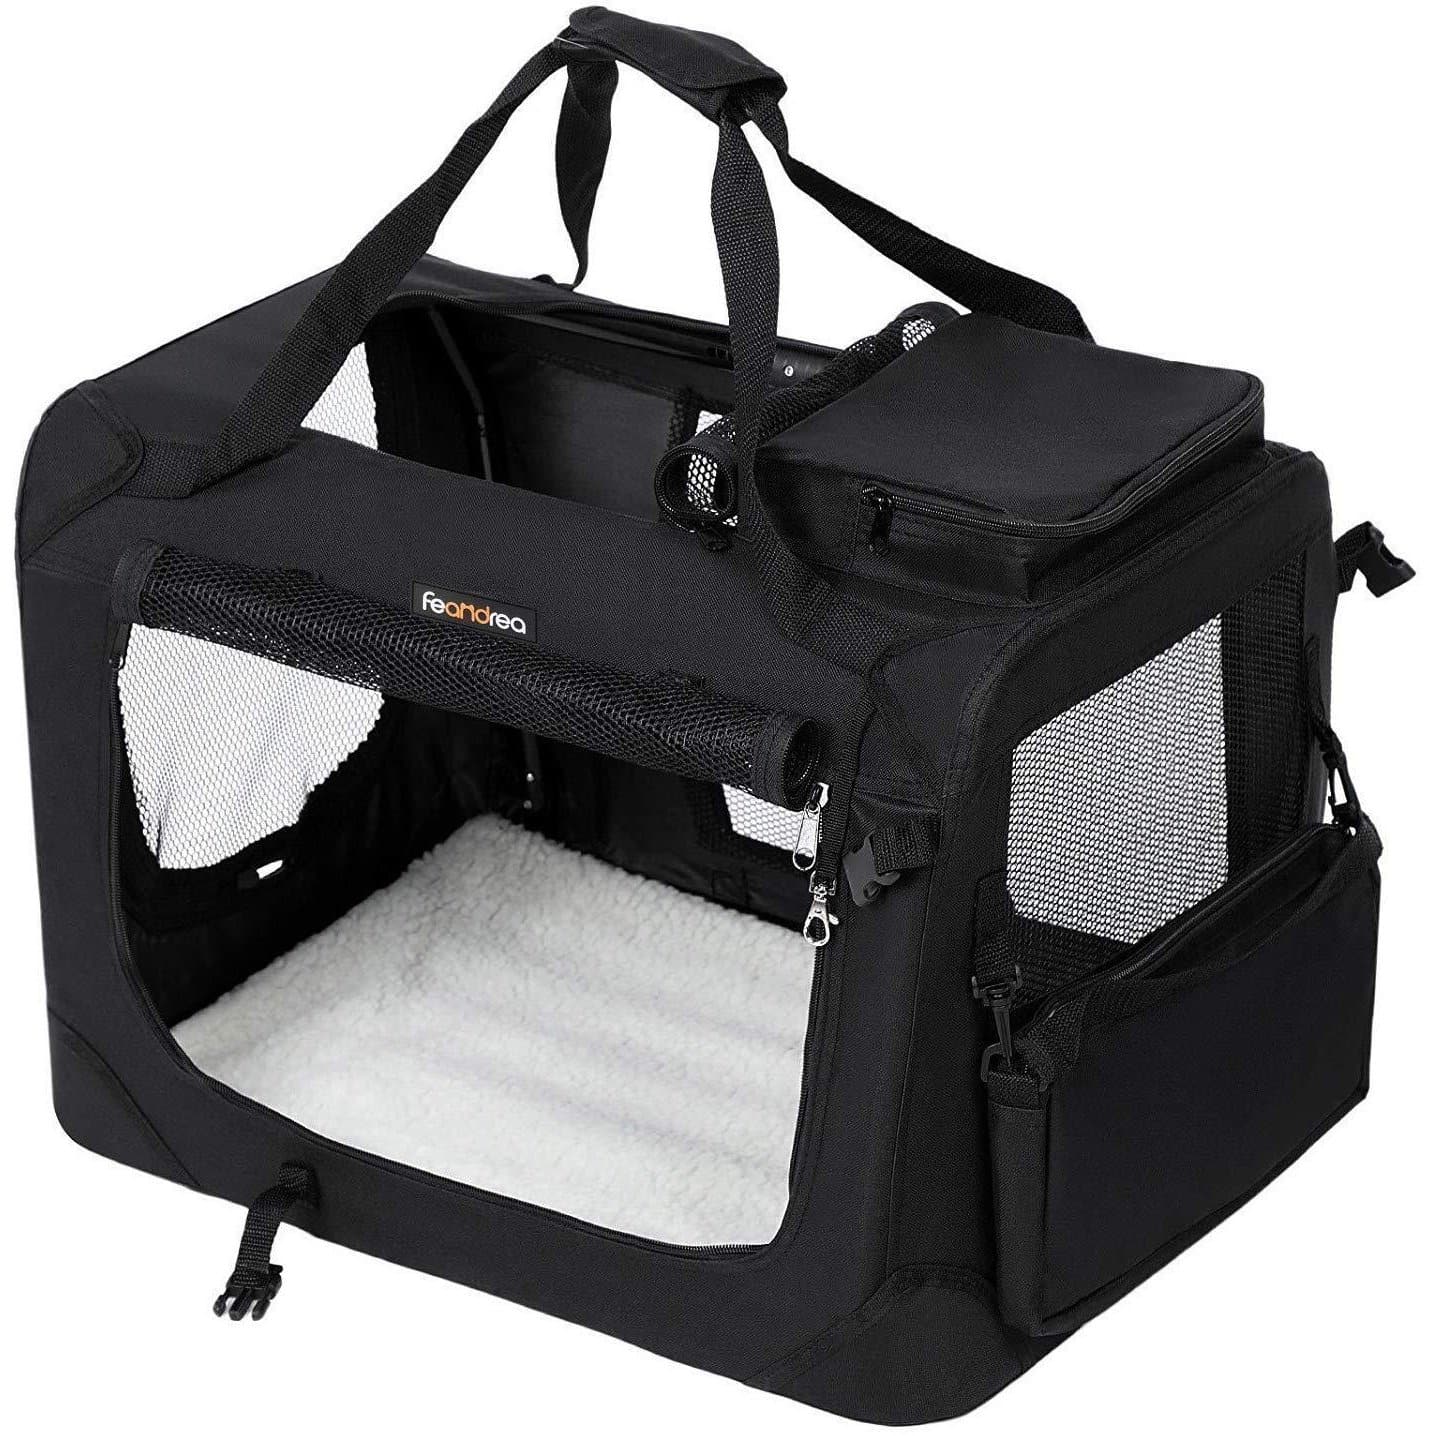 Nancy's Carrier Bag for Animals - Dog Bag - Travel Bag for Dogs - Dog Box - Carrier Bag for Cats - 60 x 40 x 40 cm